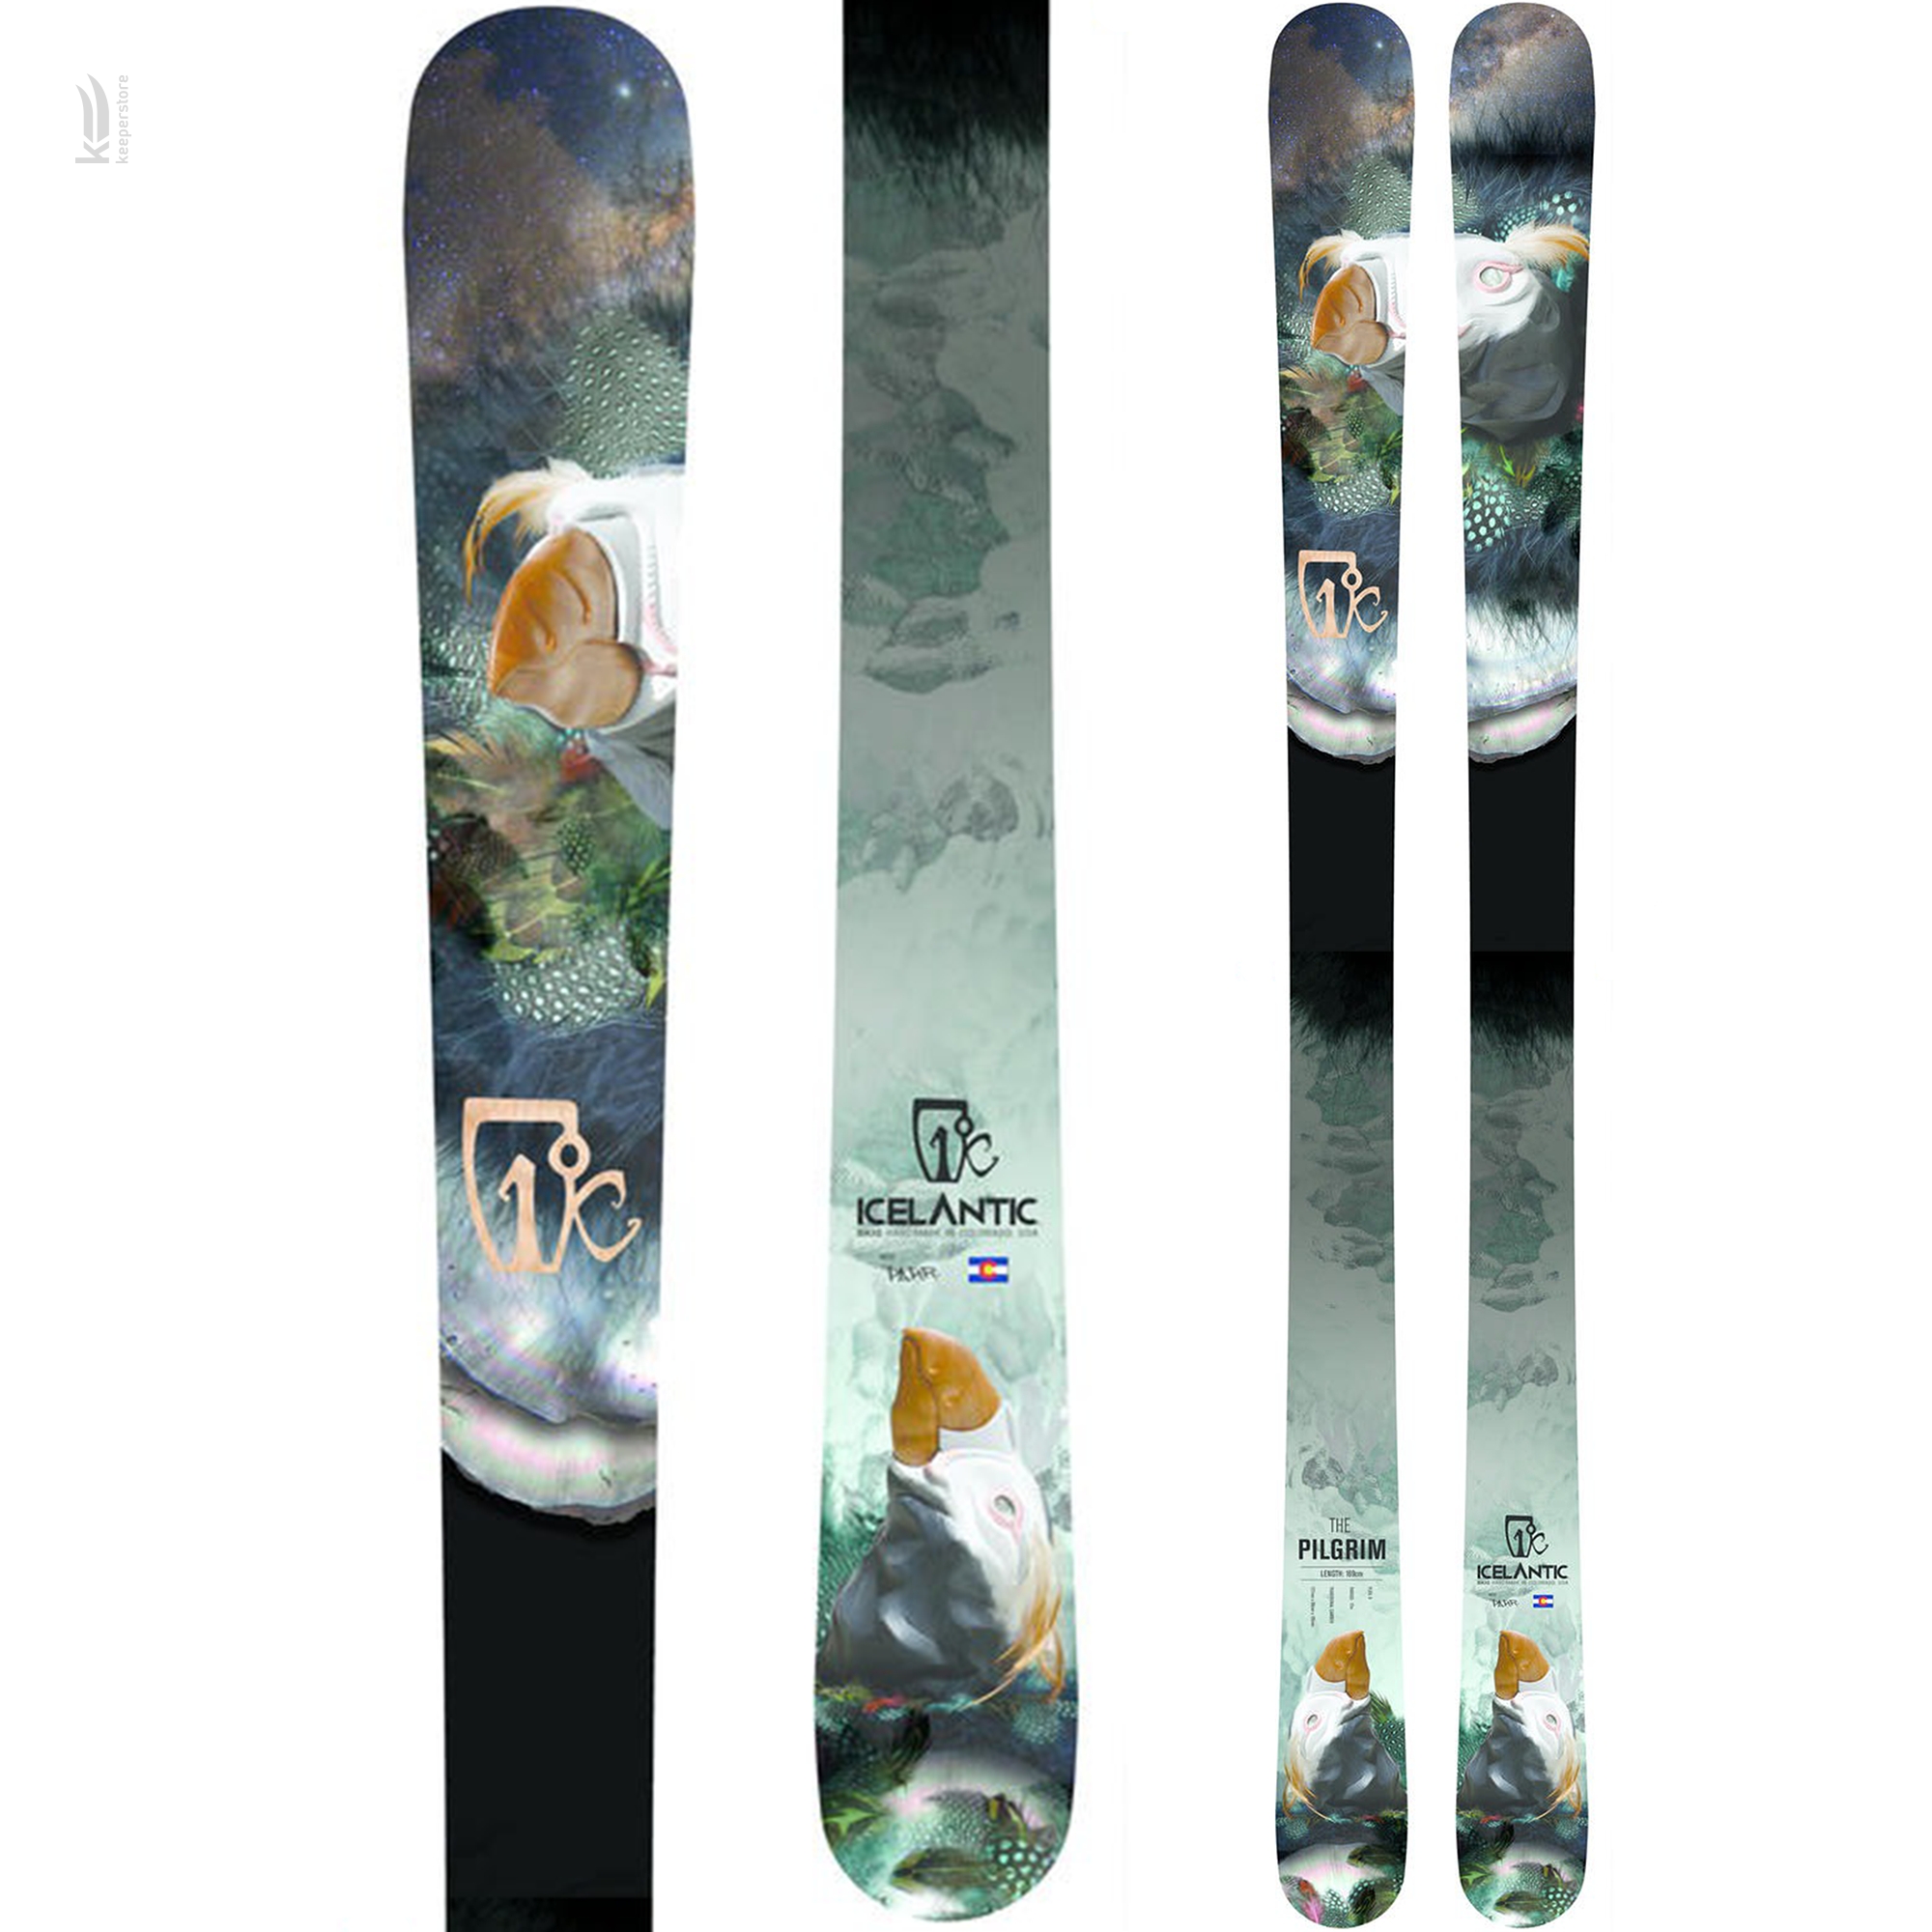 Лыжи для карвинга Icelantic Pilgrim 90 2014/2015 169cm